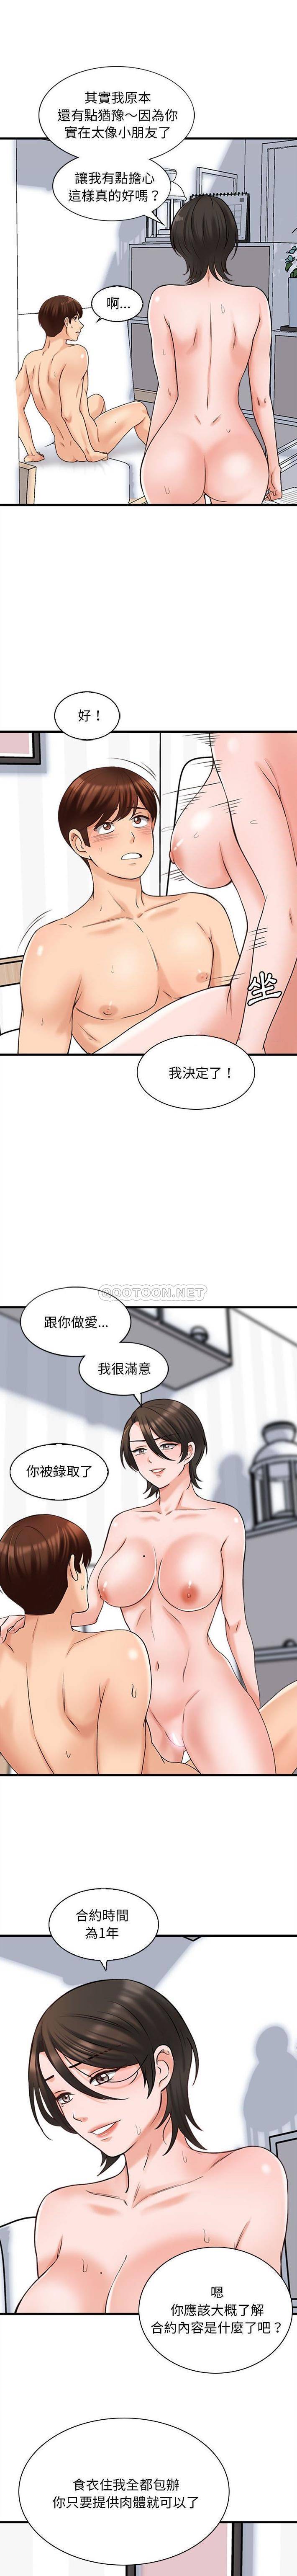 韩国污漫画 幸福公寓 第7话 9